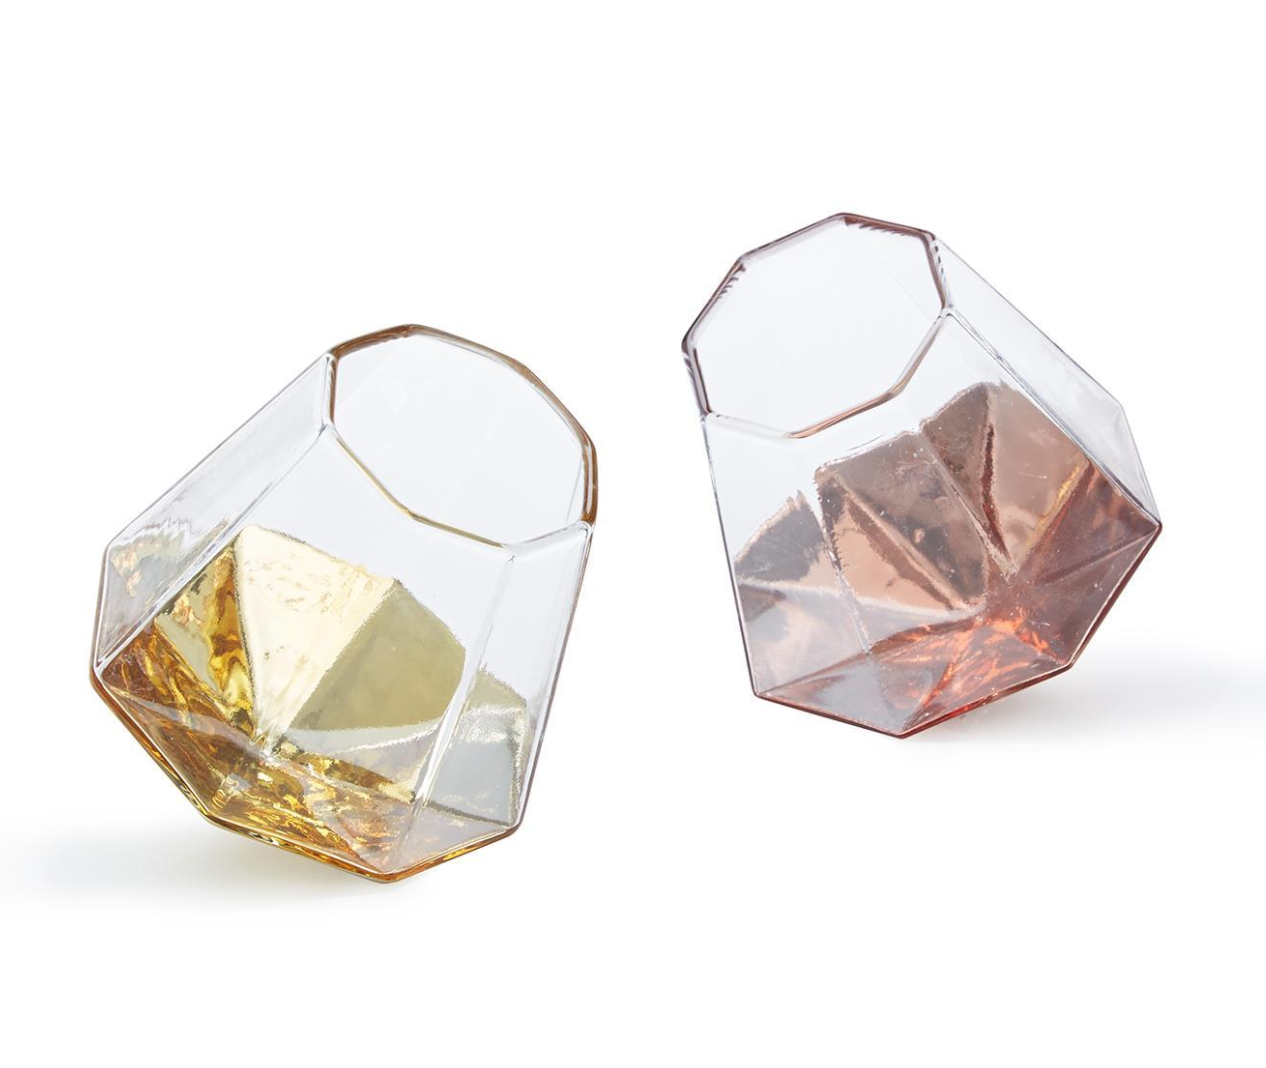 DIAMOND GLASSES ASST 2 COLORS